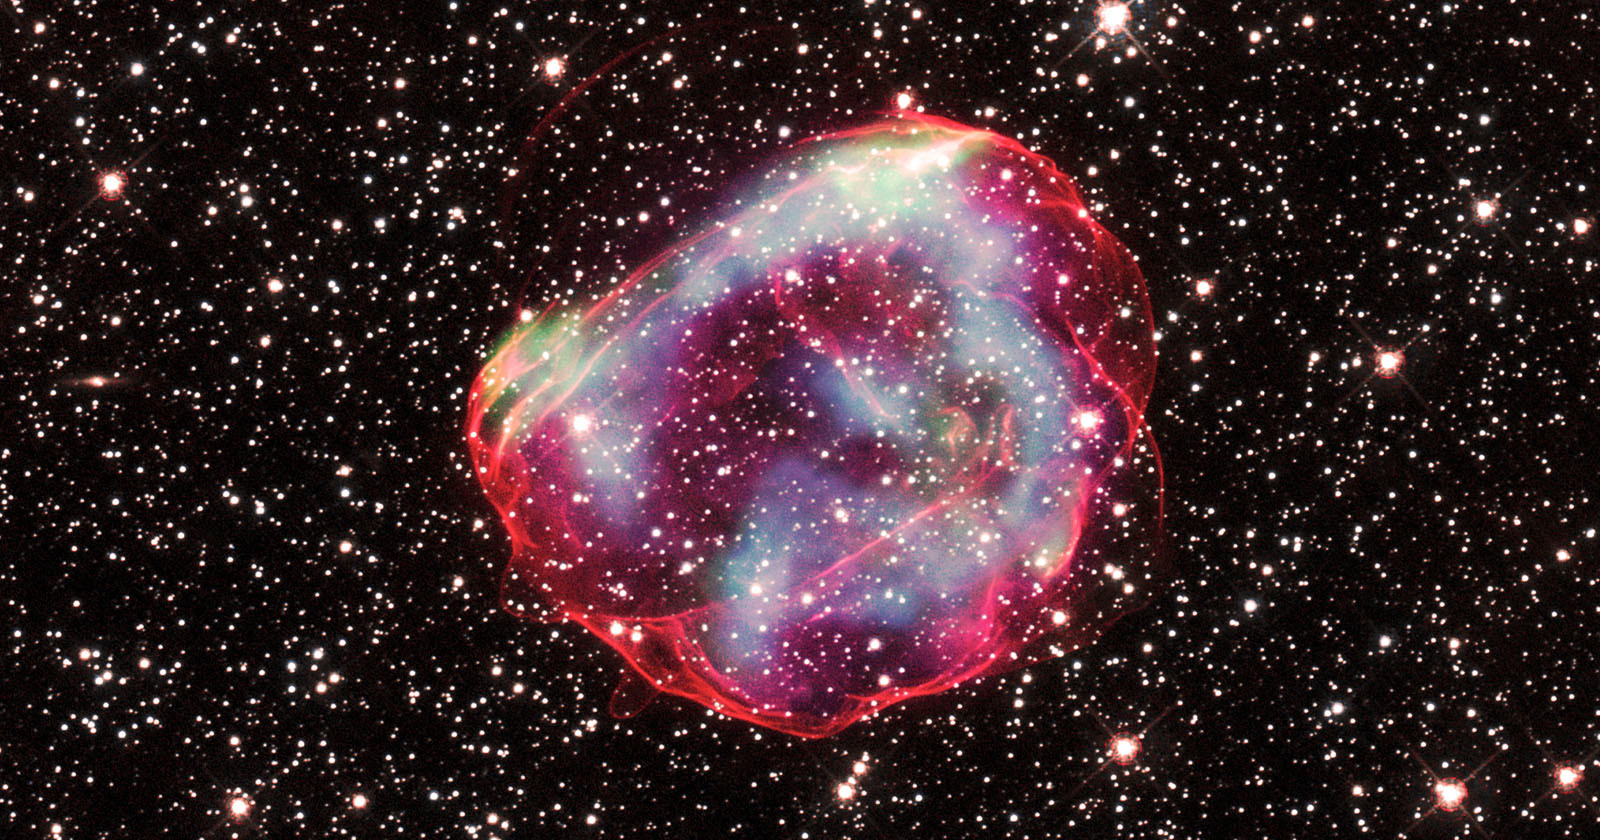 Three NASA Telescopes Combined to Capture a 670-Year-Old Supernova